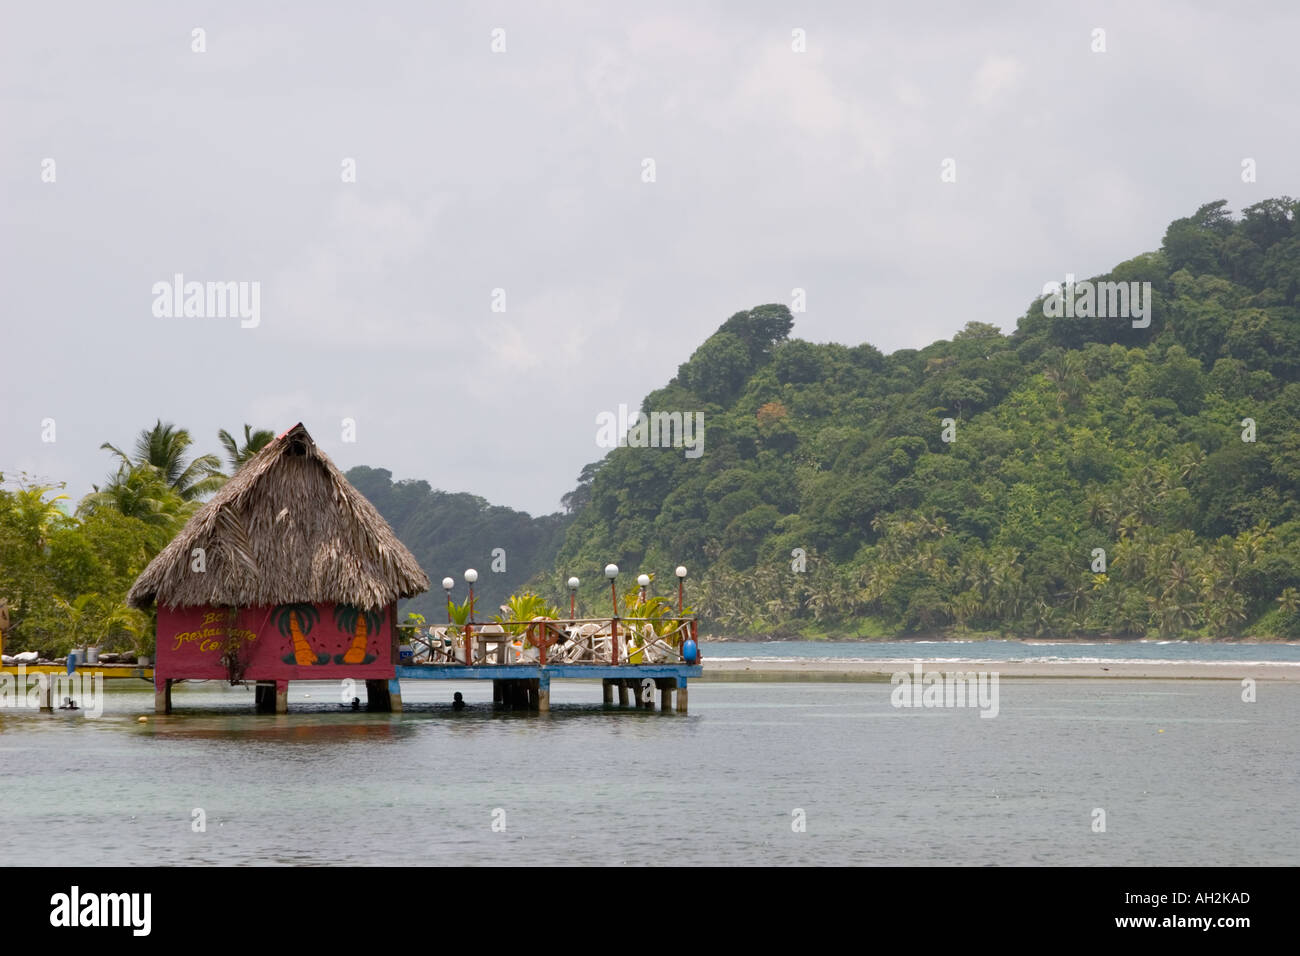 Restaurant on the water, Isla Grande, Colon, Republic of Panama, Central America Stock Photo